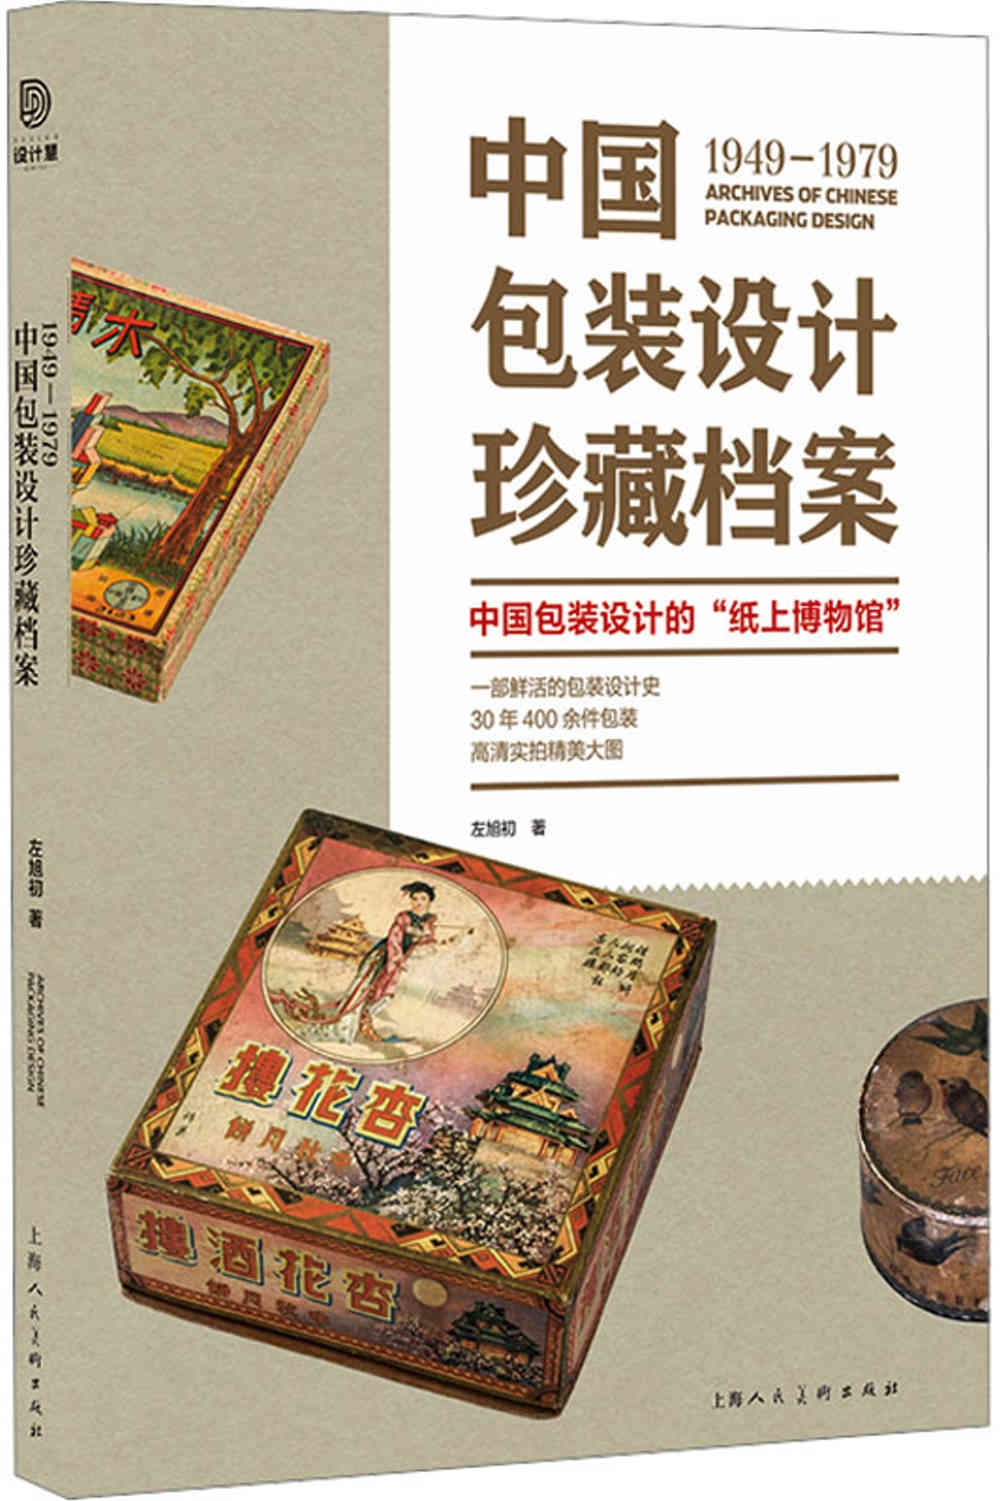 1949-1979中國包裝設計珍藏檔案